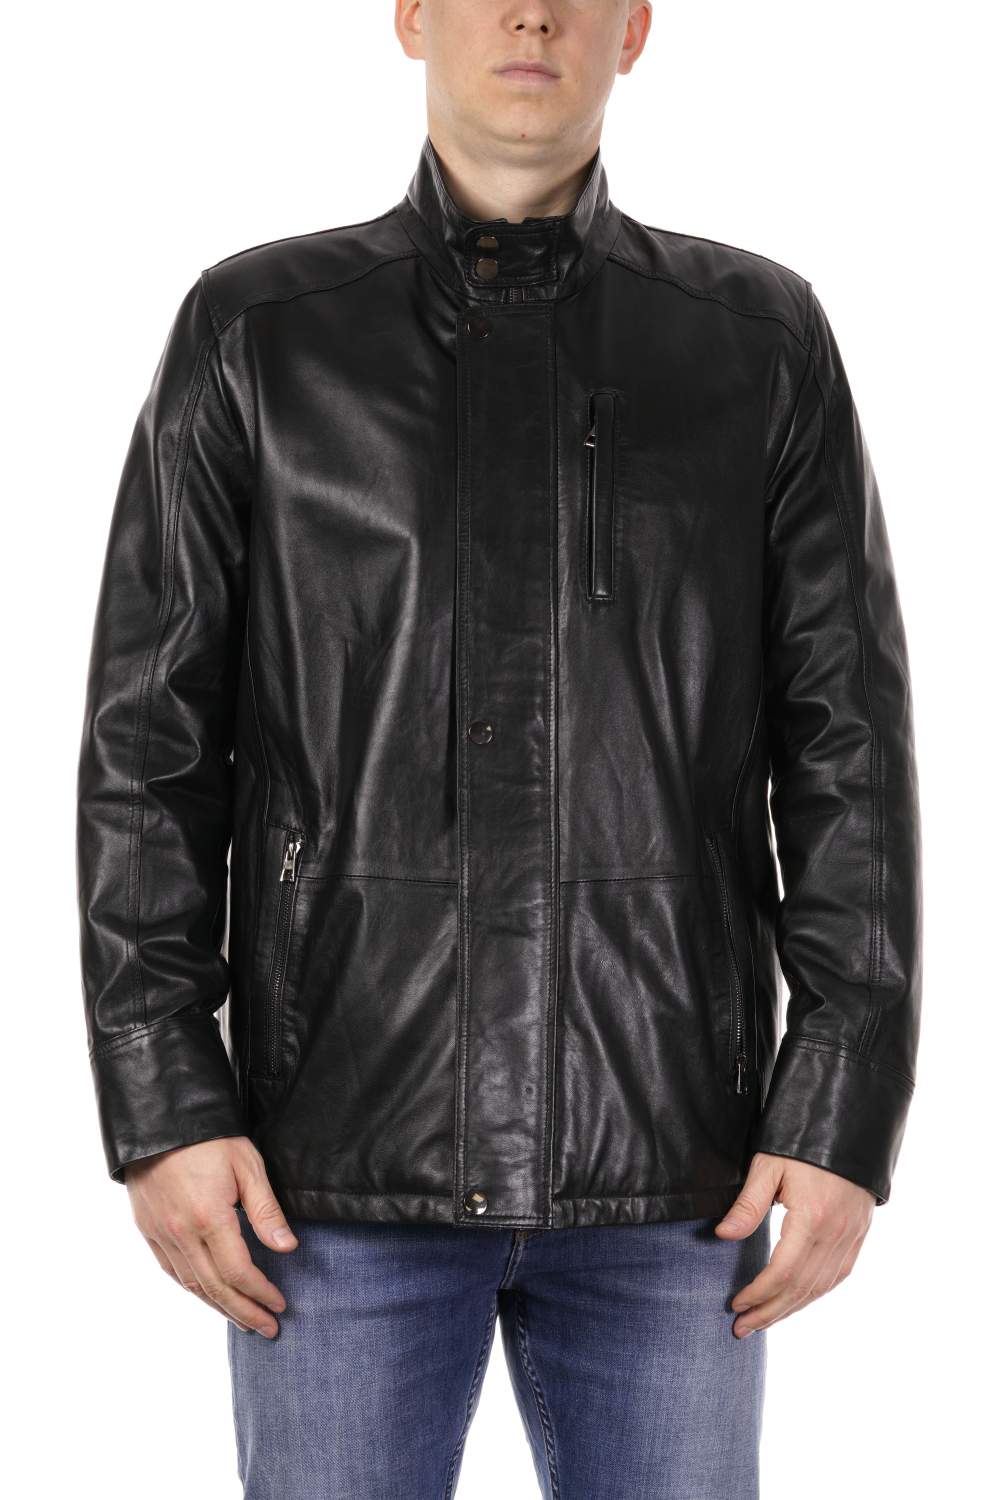 Страница 3 - Мужские кожаные куртки больших размеров PDONNA - Мегамаркет